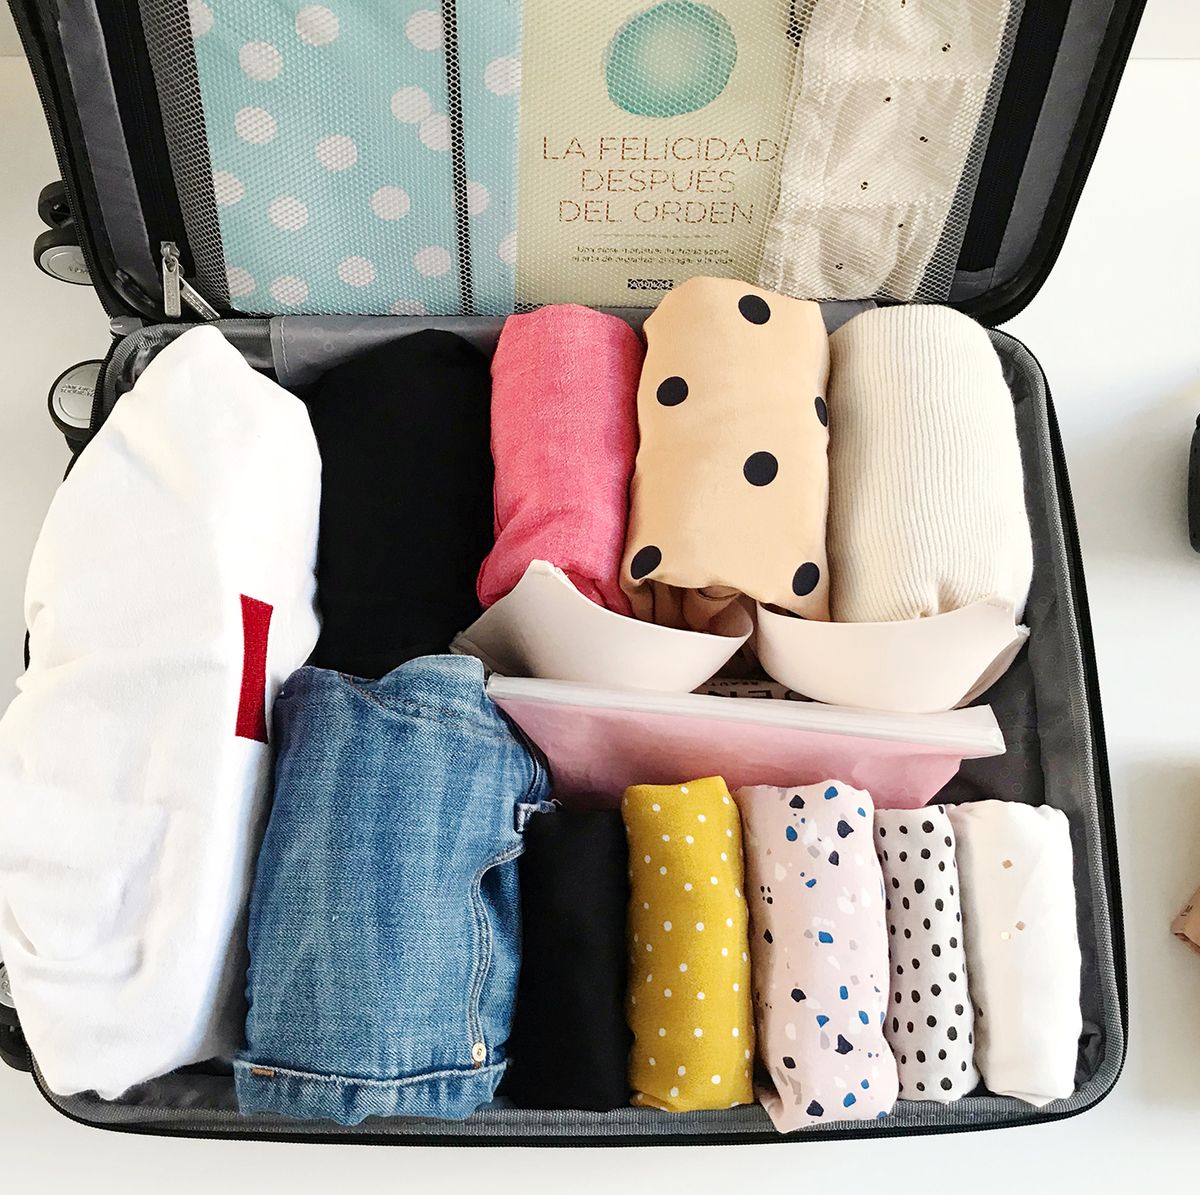 ≫ Cómo pesar una maleta en casa